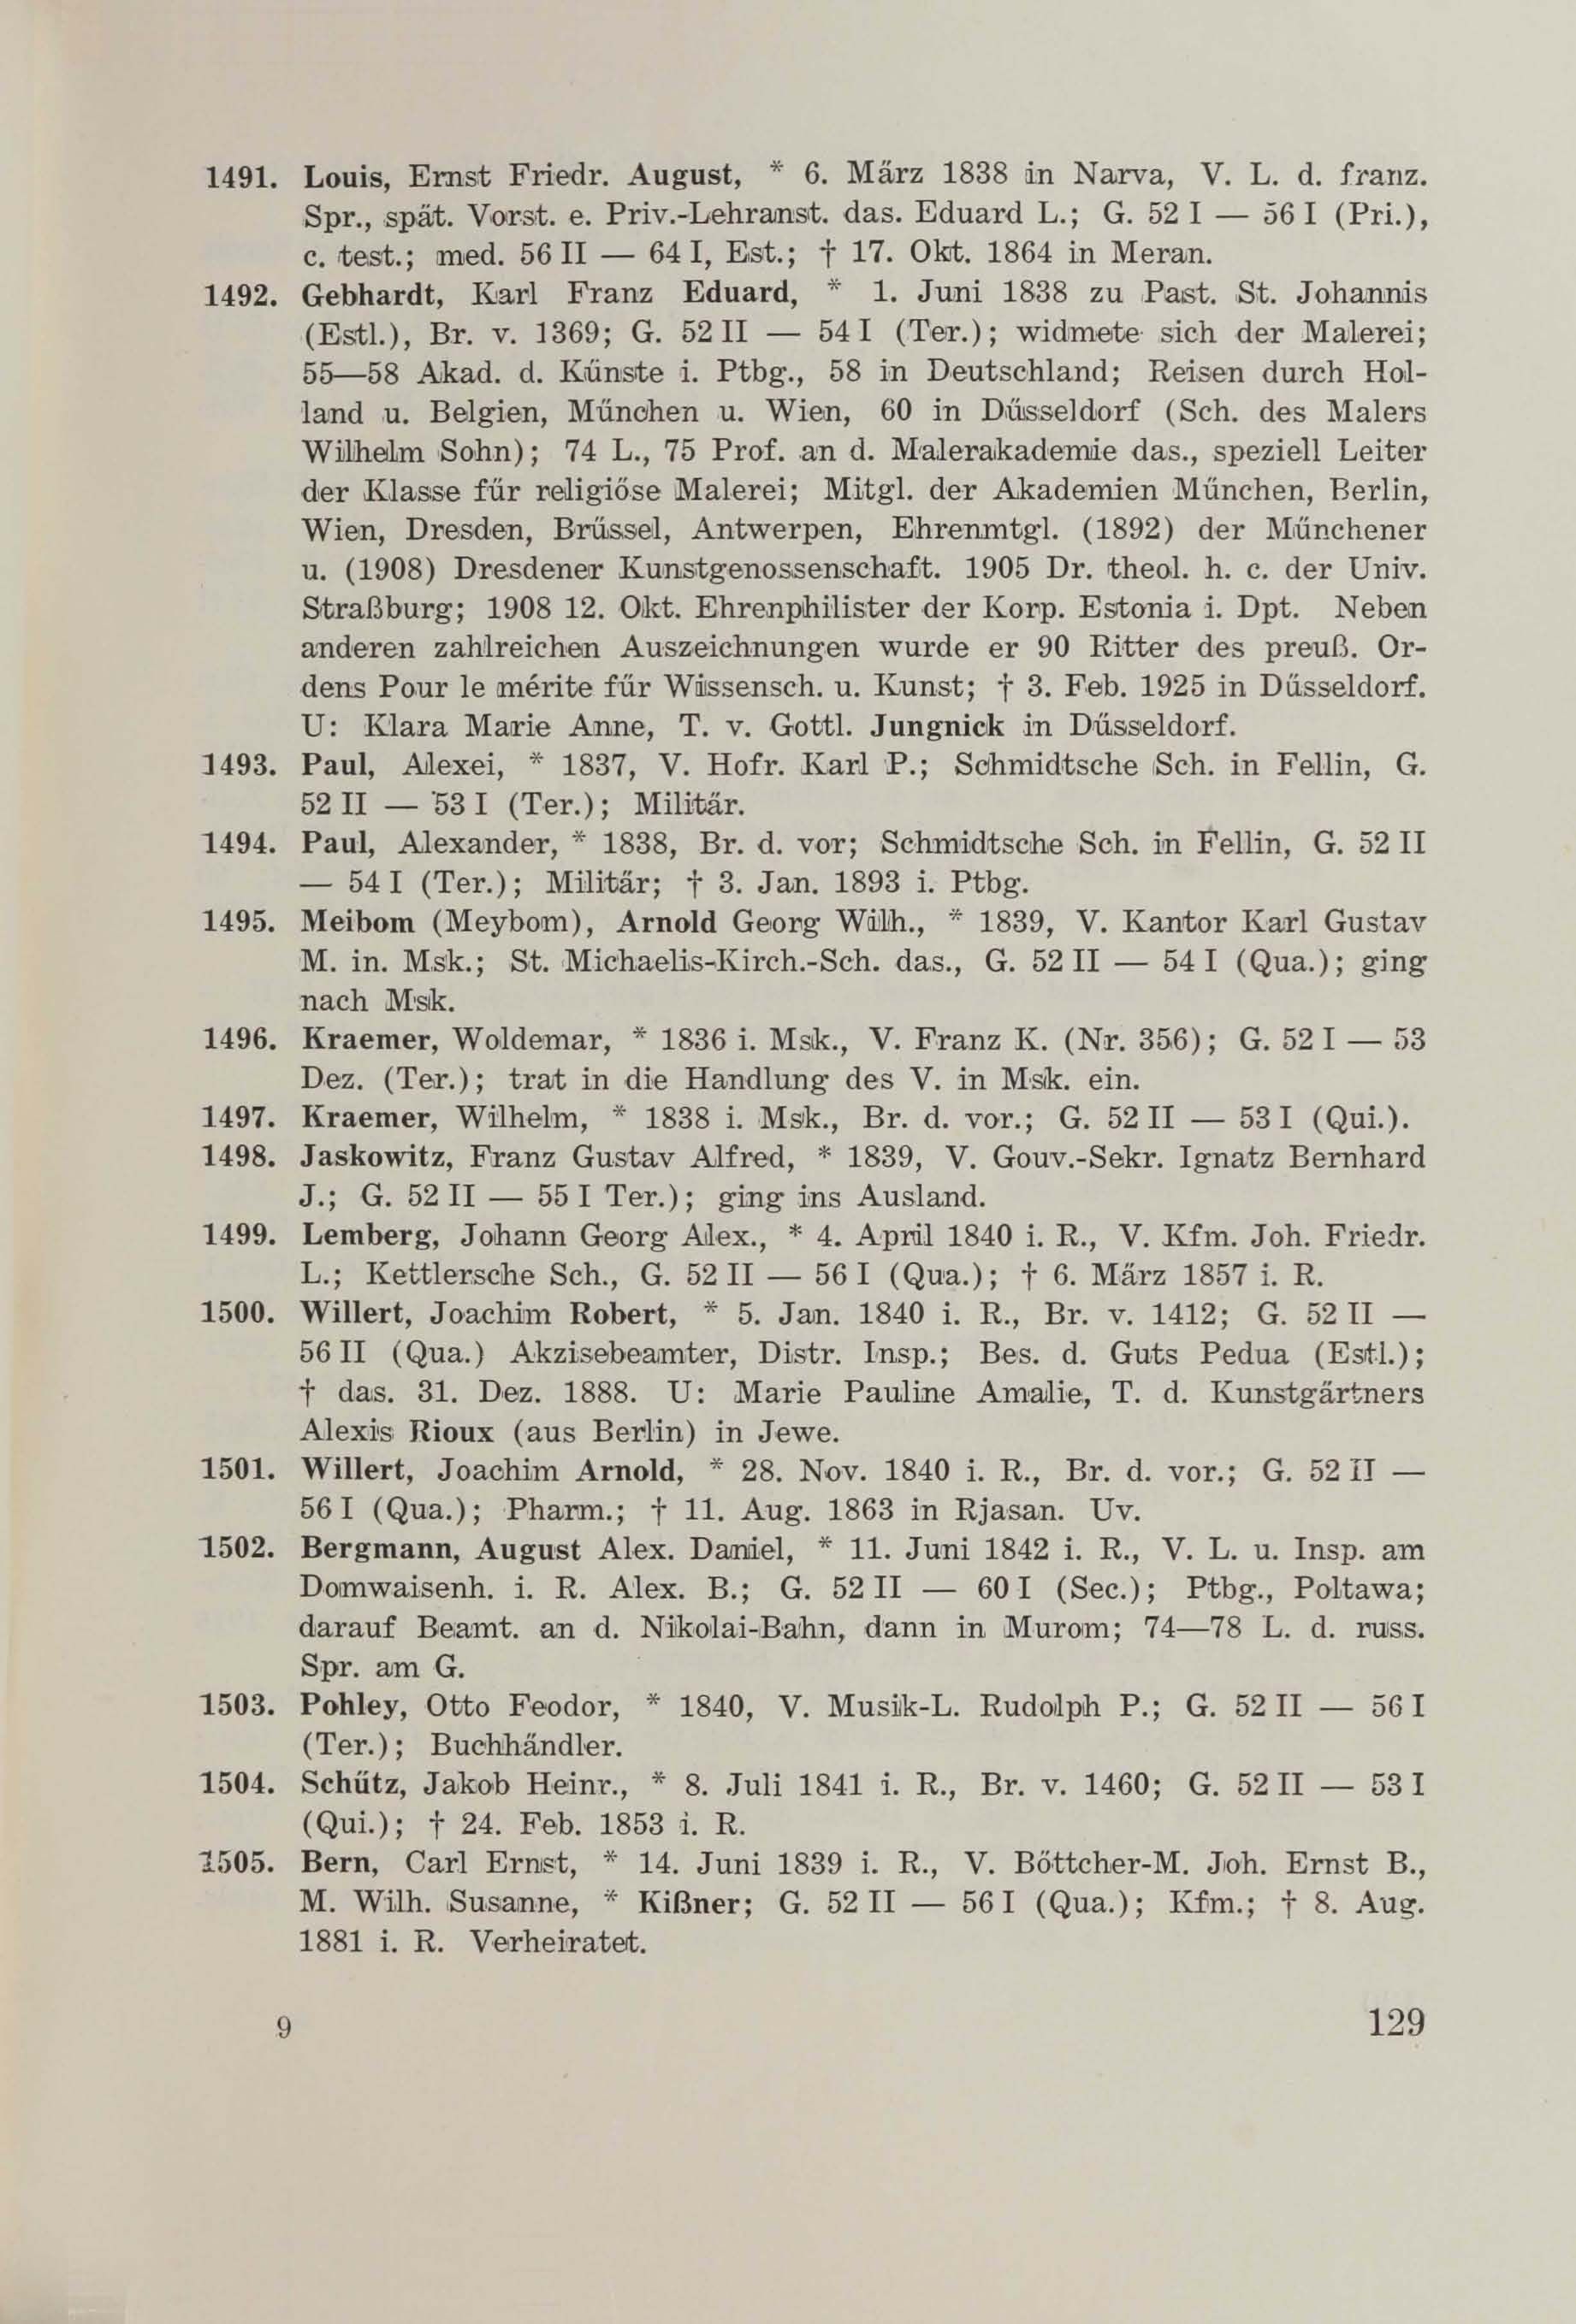 Schüler-Verzeichnis des Revalschen Gouvernements-Gymnasiums 1805–1890 (1931) | 139. (129) Main body of text